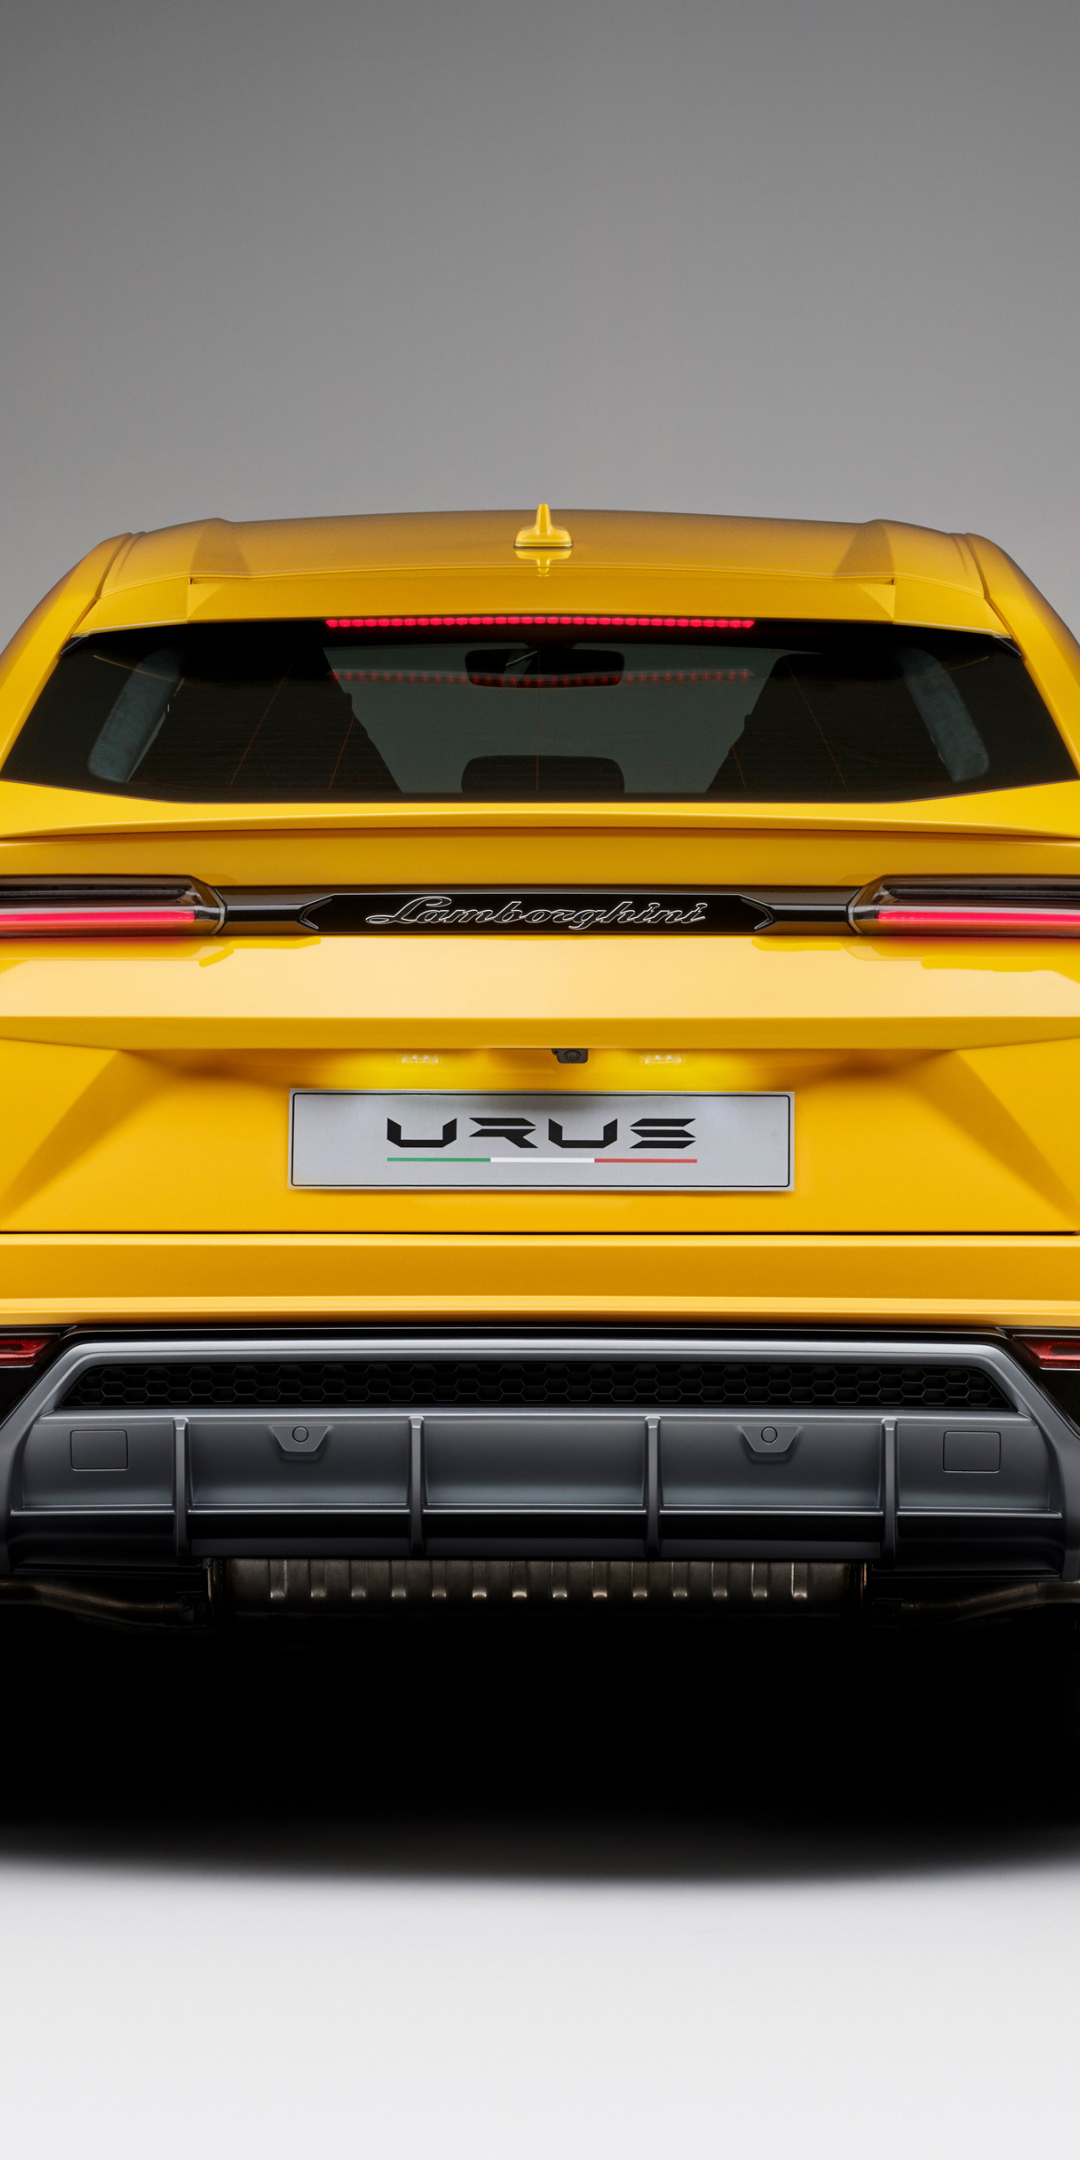 Lamborghini urus, yellow car, rear view, 1080x2160 wallpaper